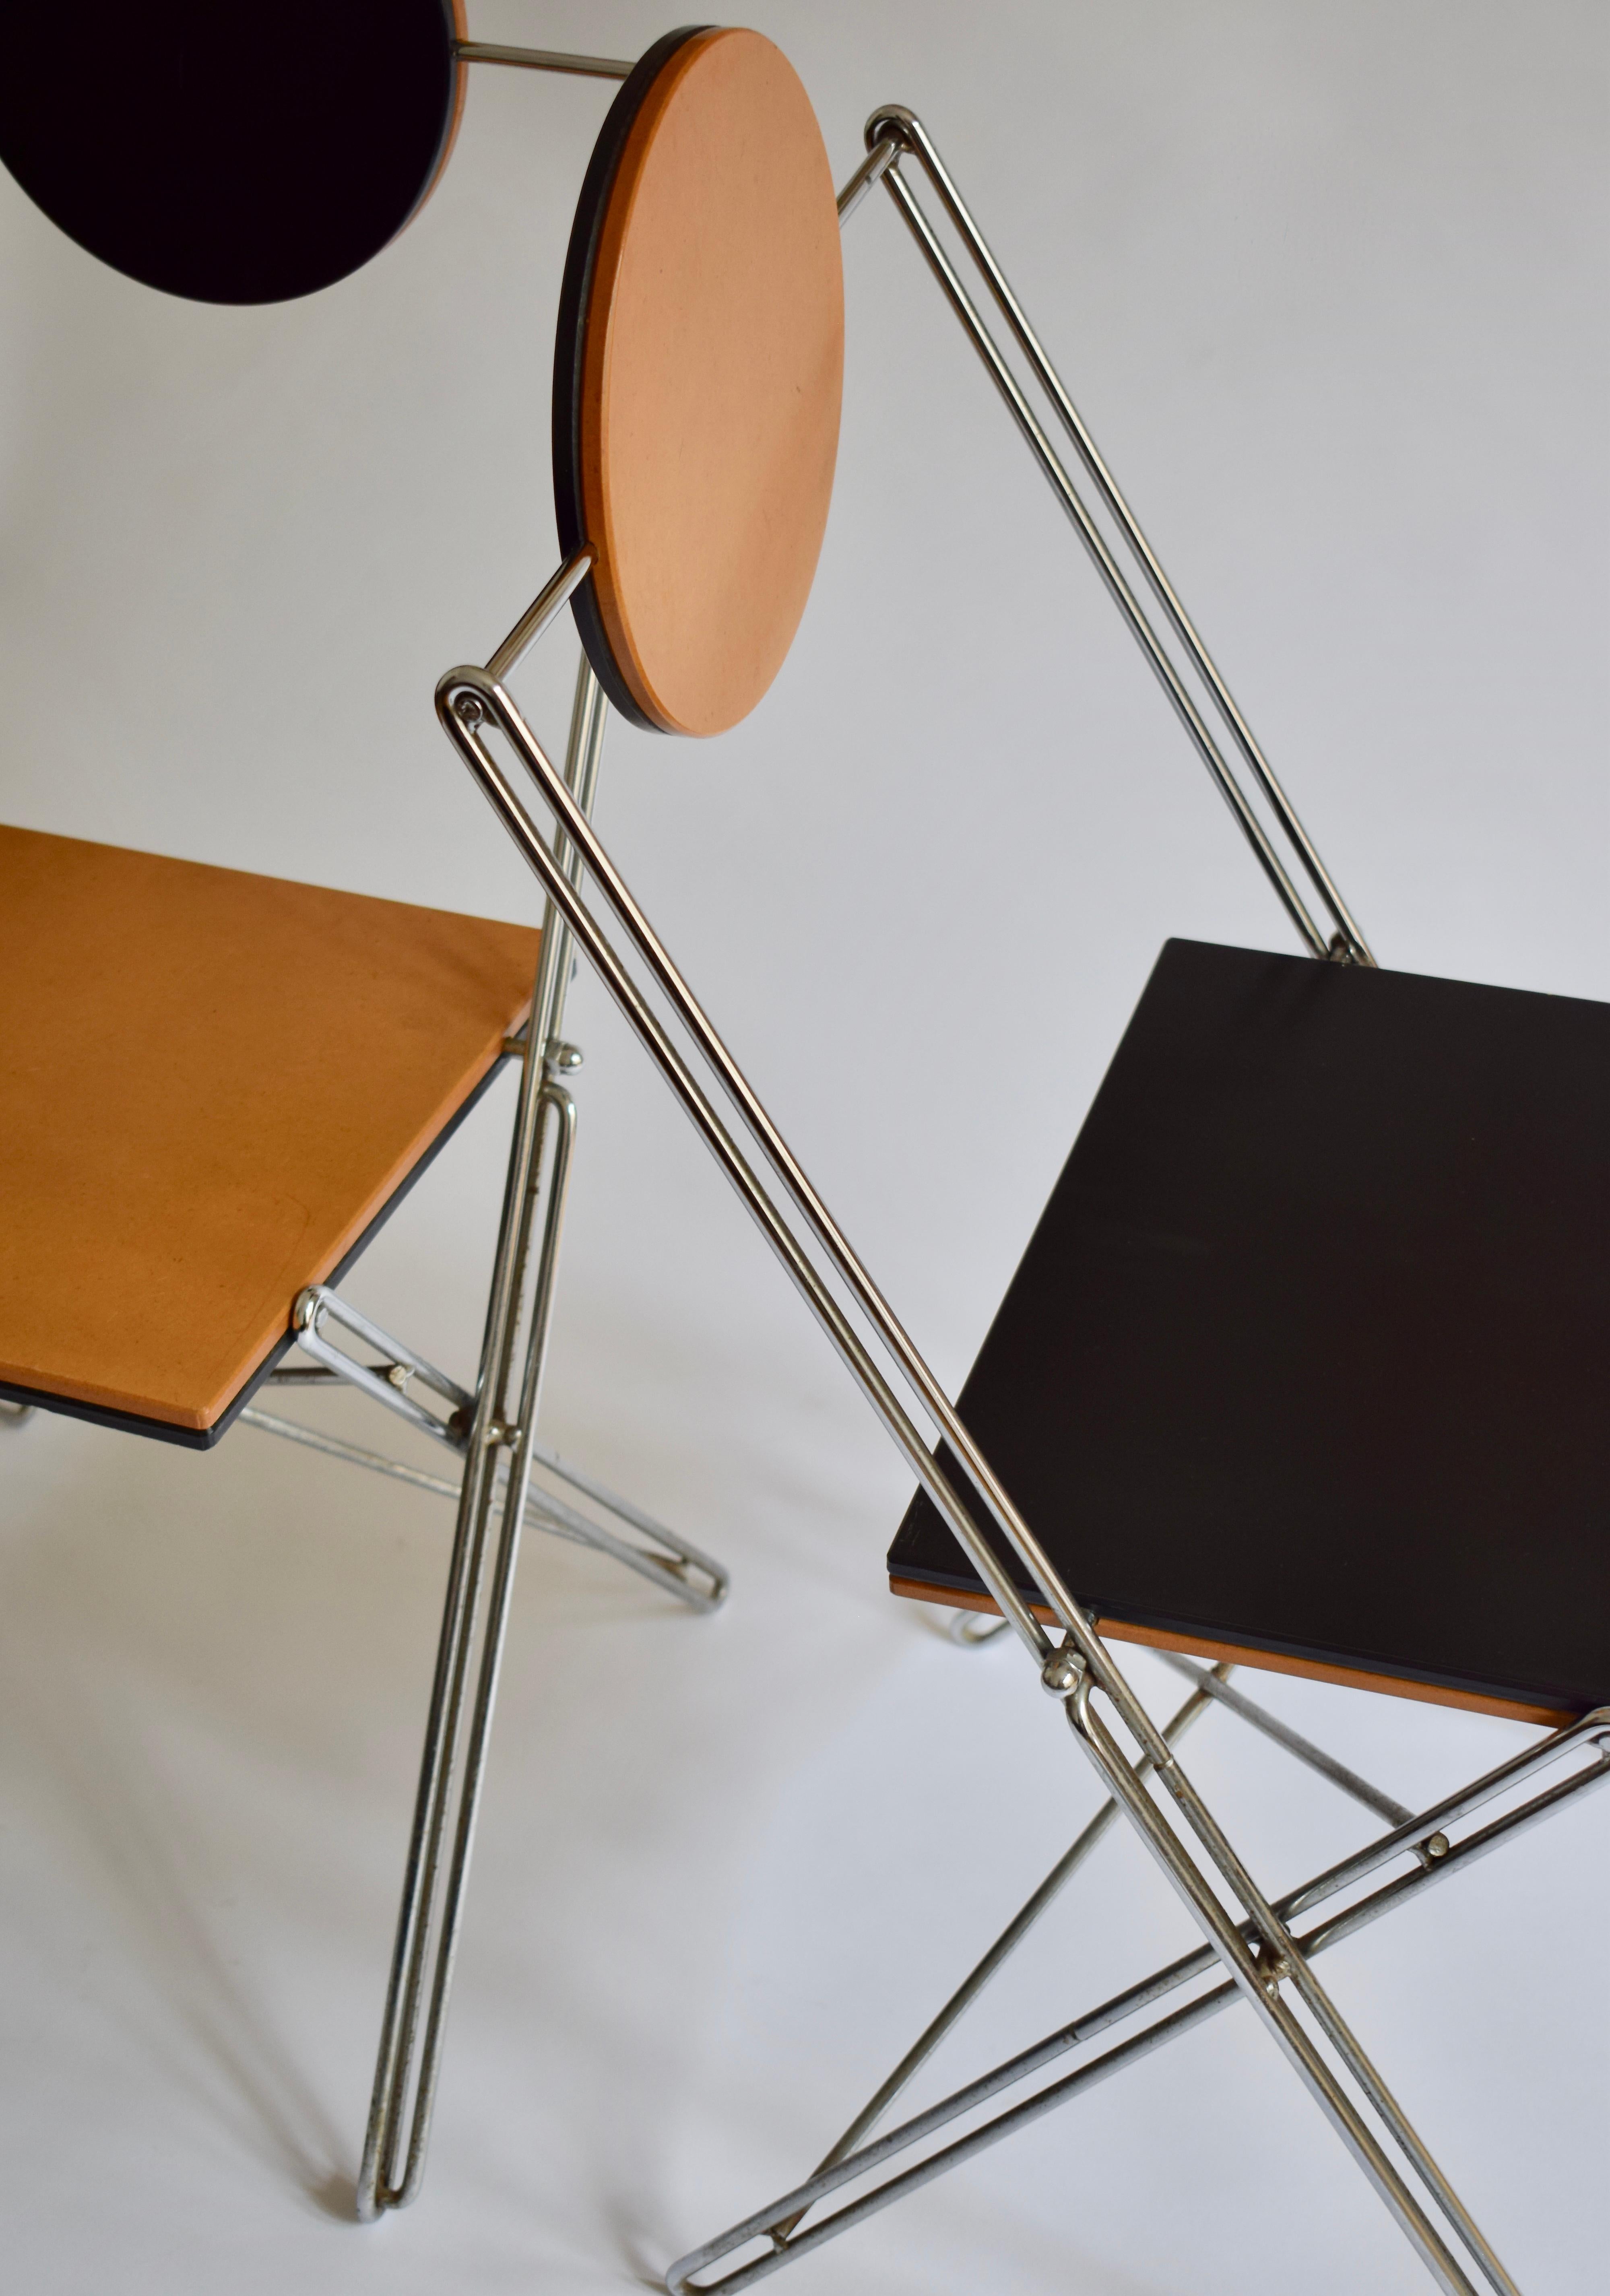 Rare paire de chaises pliable R.J.C. de René-Jean caillette pour VIA Diffusion. 
France - vers 1986
Assise et dossier en médium verni, structure en fil d'acier. Ces chaises sont pliantes et réversibles.
Bel état général.